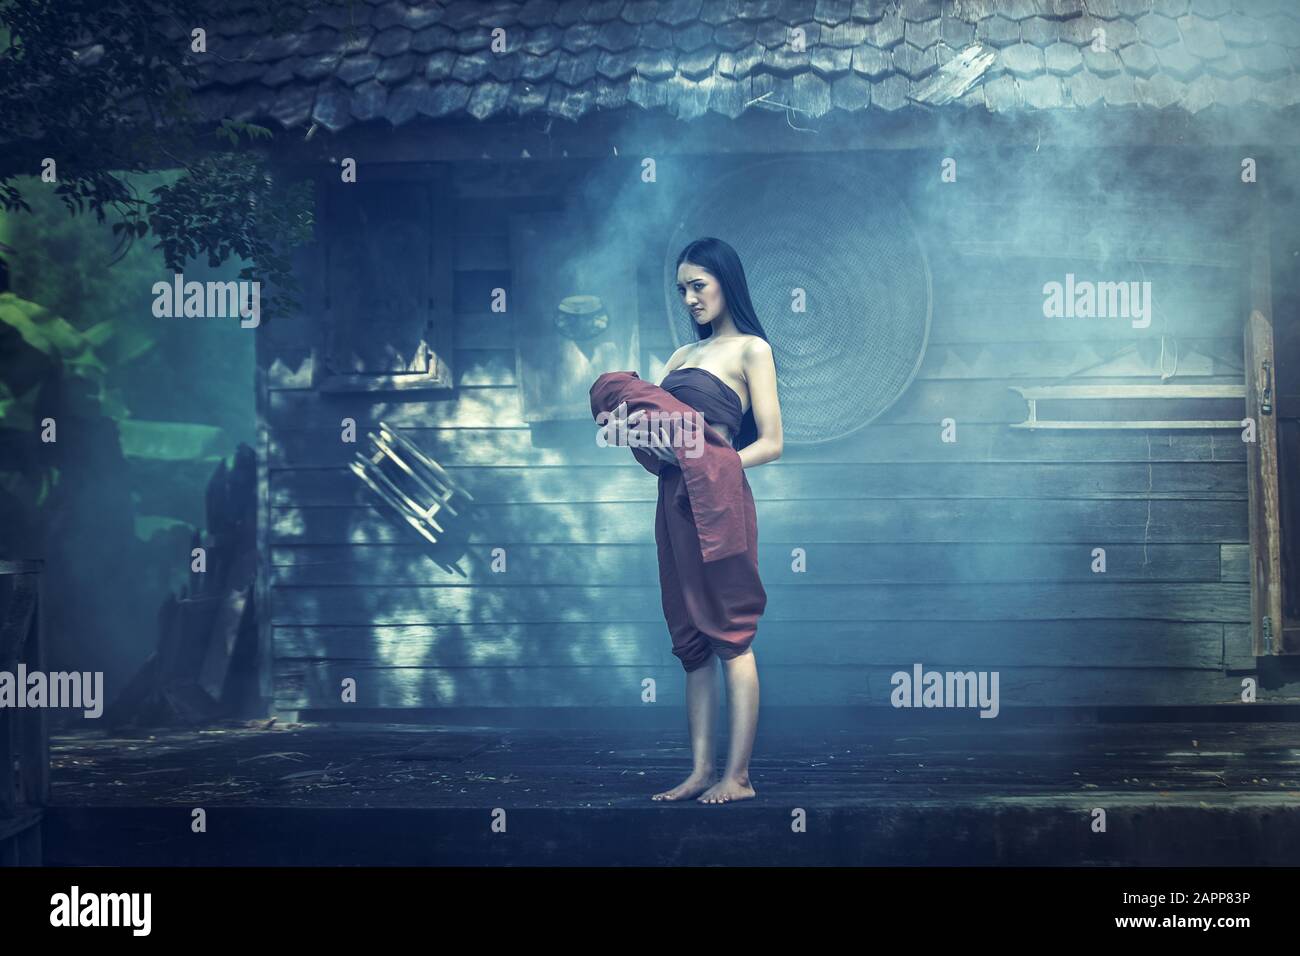 Légende De Mae Nak Phra Khanong. Le concept de fantôme thaïlandais, la scène d'horreur de la femme effrayante avec son bébé fantôme Banque D'Images